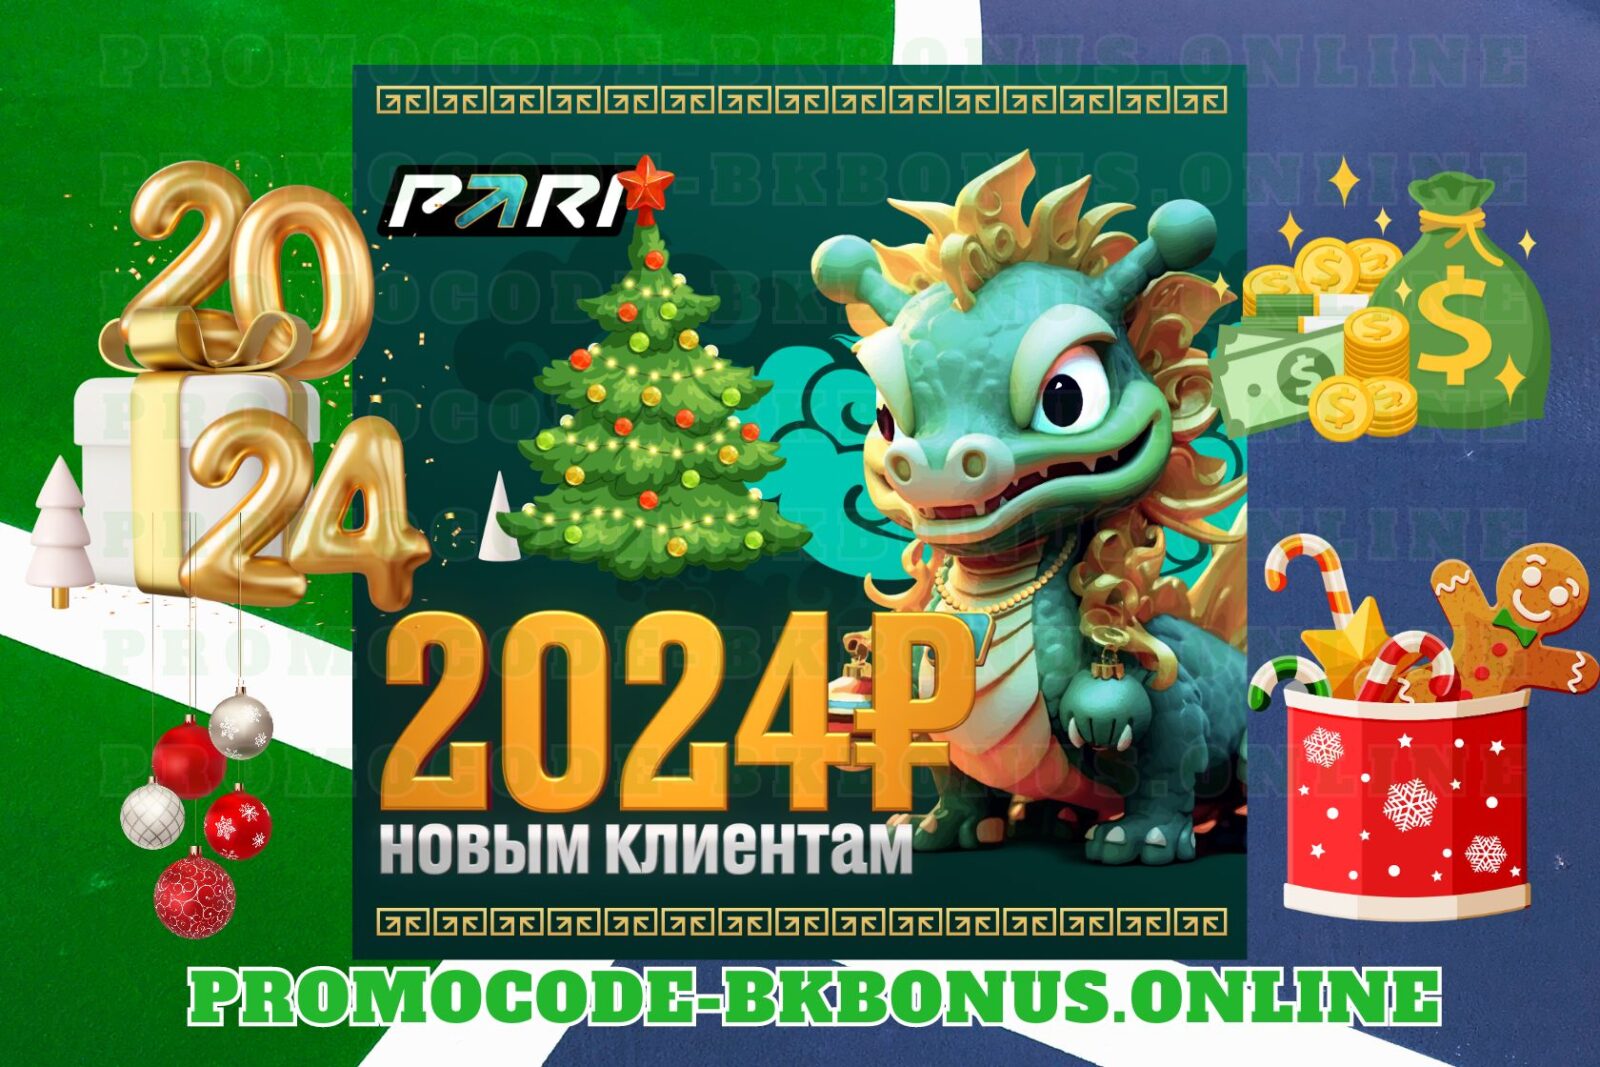 poluchit-fribet-pari-2024-fribet-bonus-bukmekerskaya-kontora-stavki-na-sport-kopiya-2023-12-28T123236.749